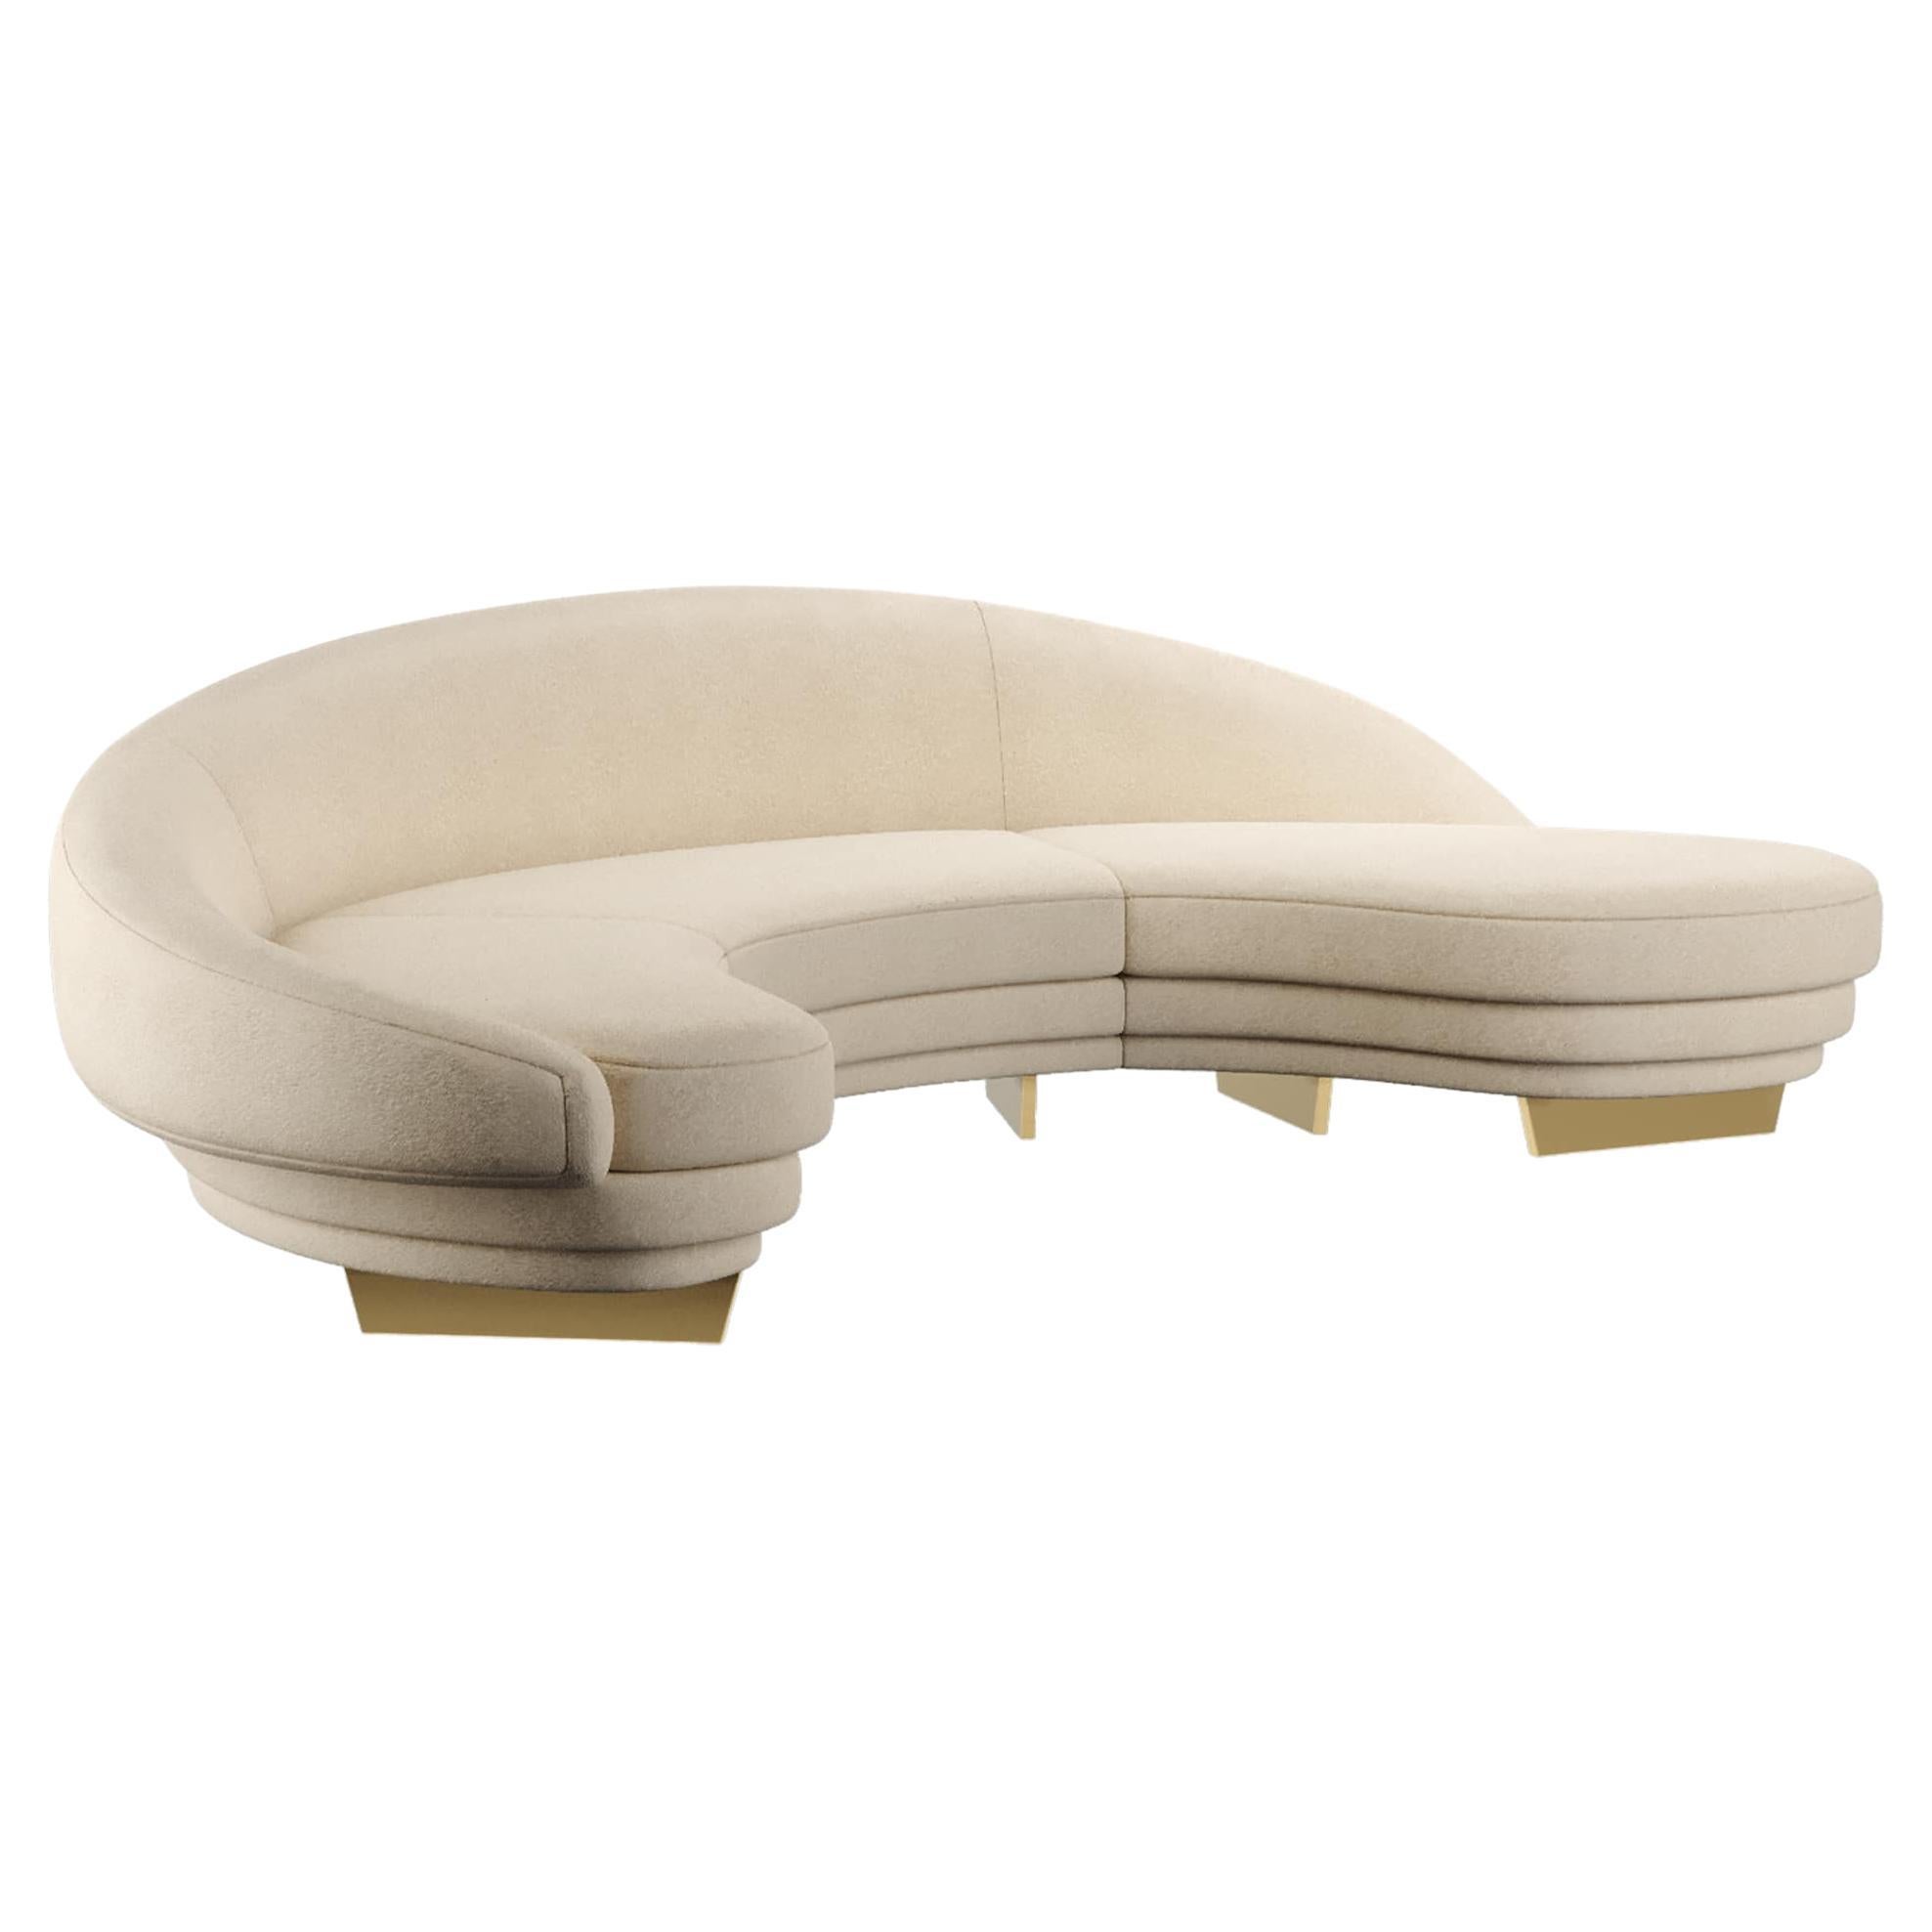 Canapé moderne incurvé en velours beige avec détails en bois et or